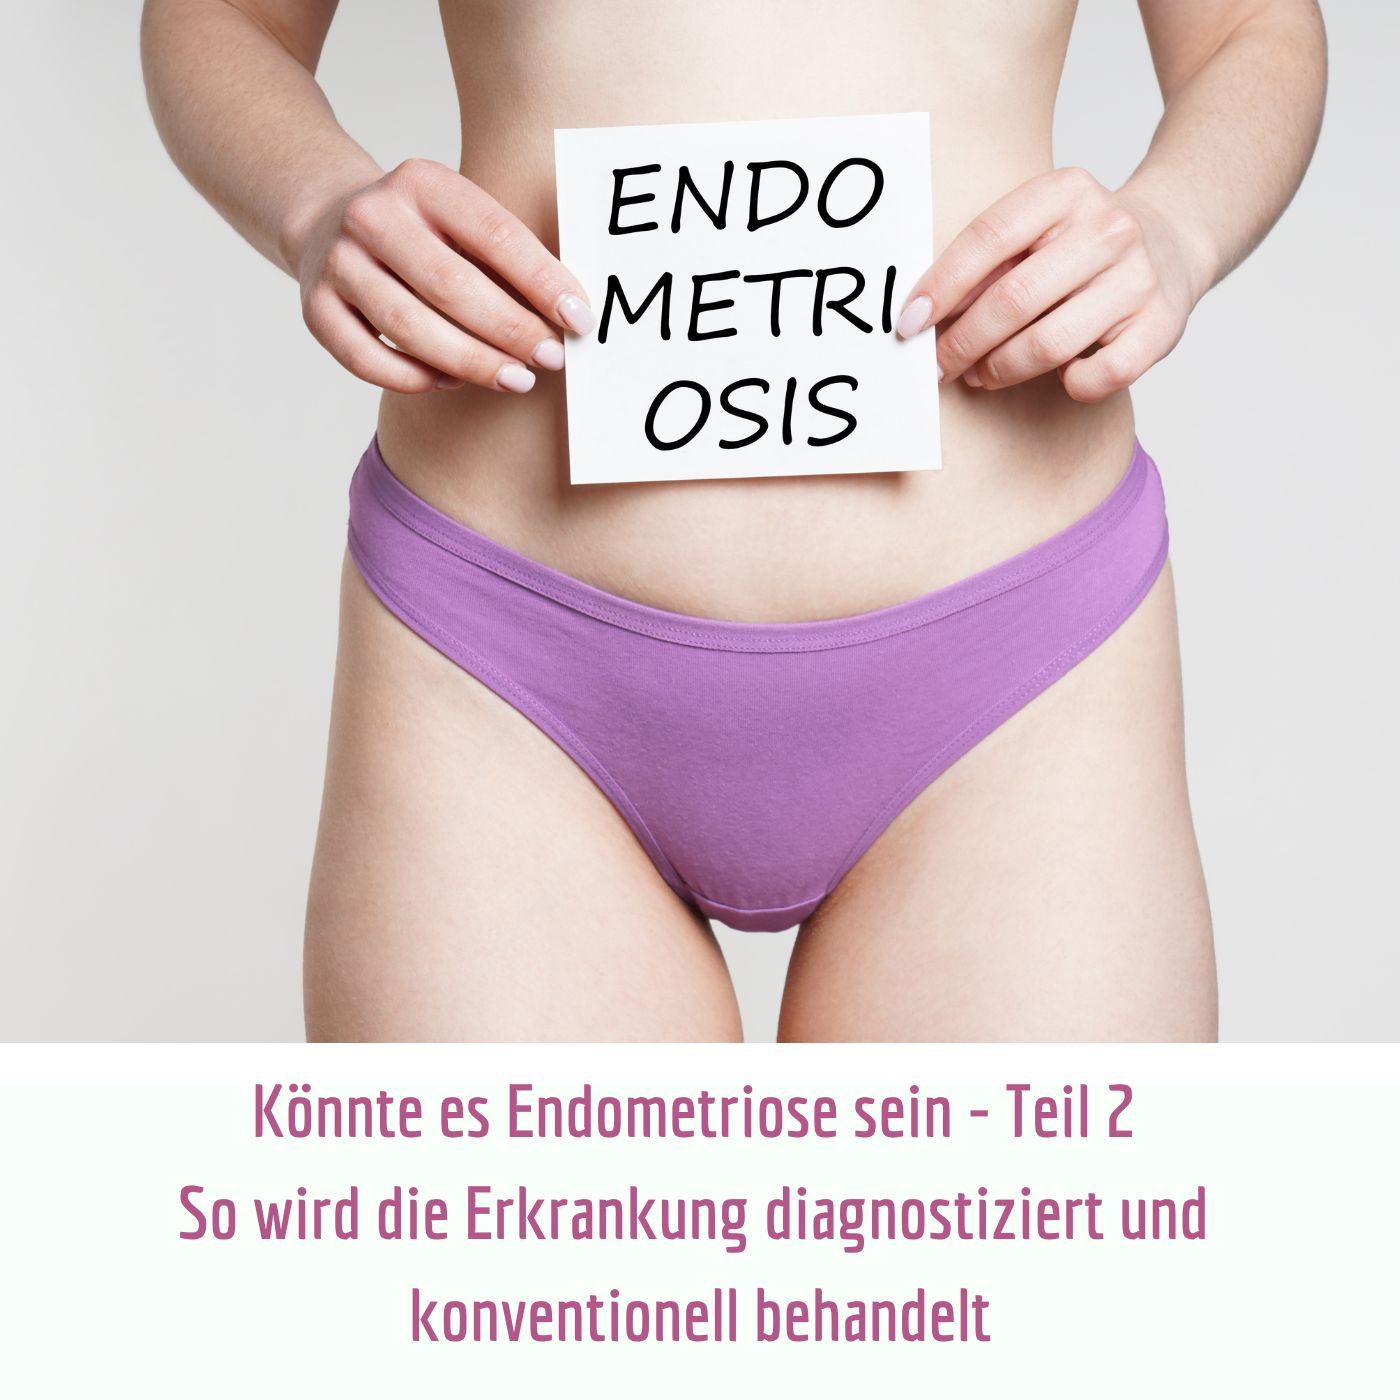 Könnte es Endometriose sein Teil 2 - So wird die Erkrankung diagnostiziert und konventionell behandelt